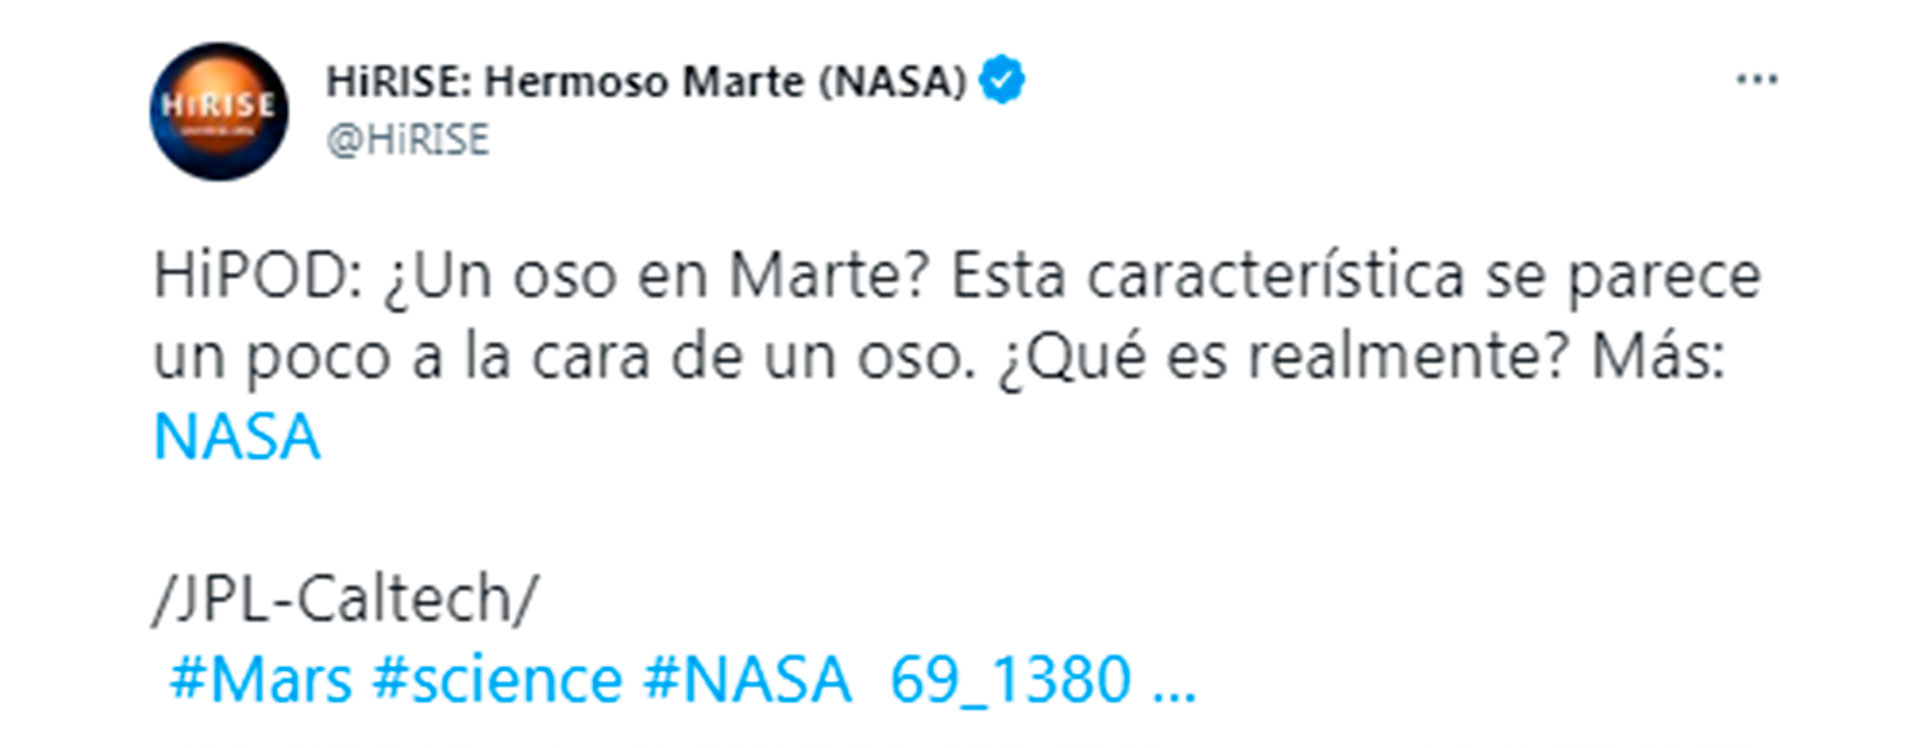 NASA-HiRISE